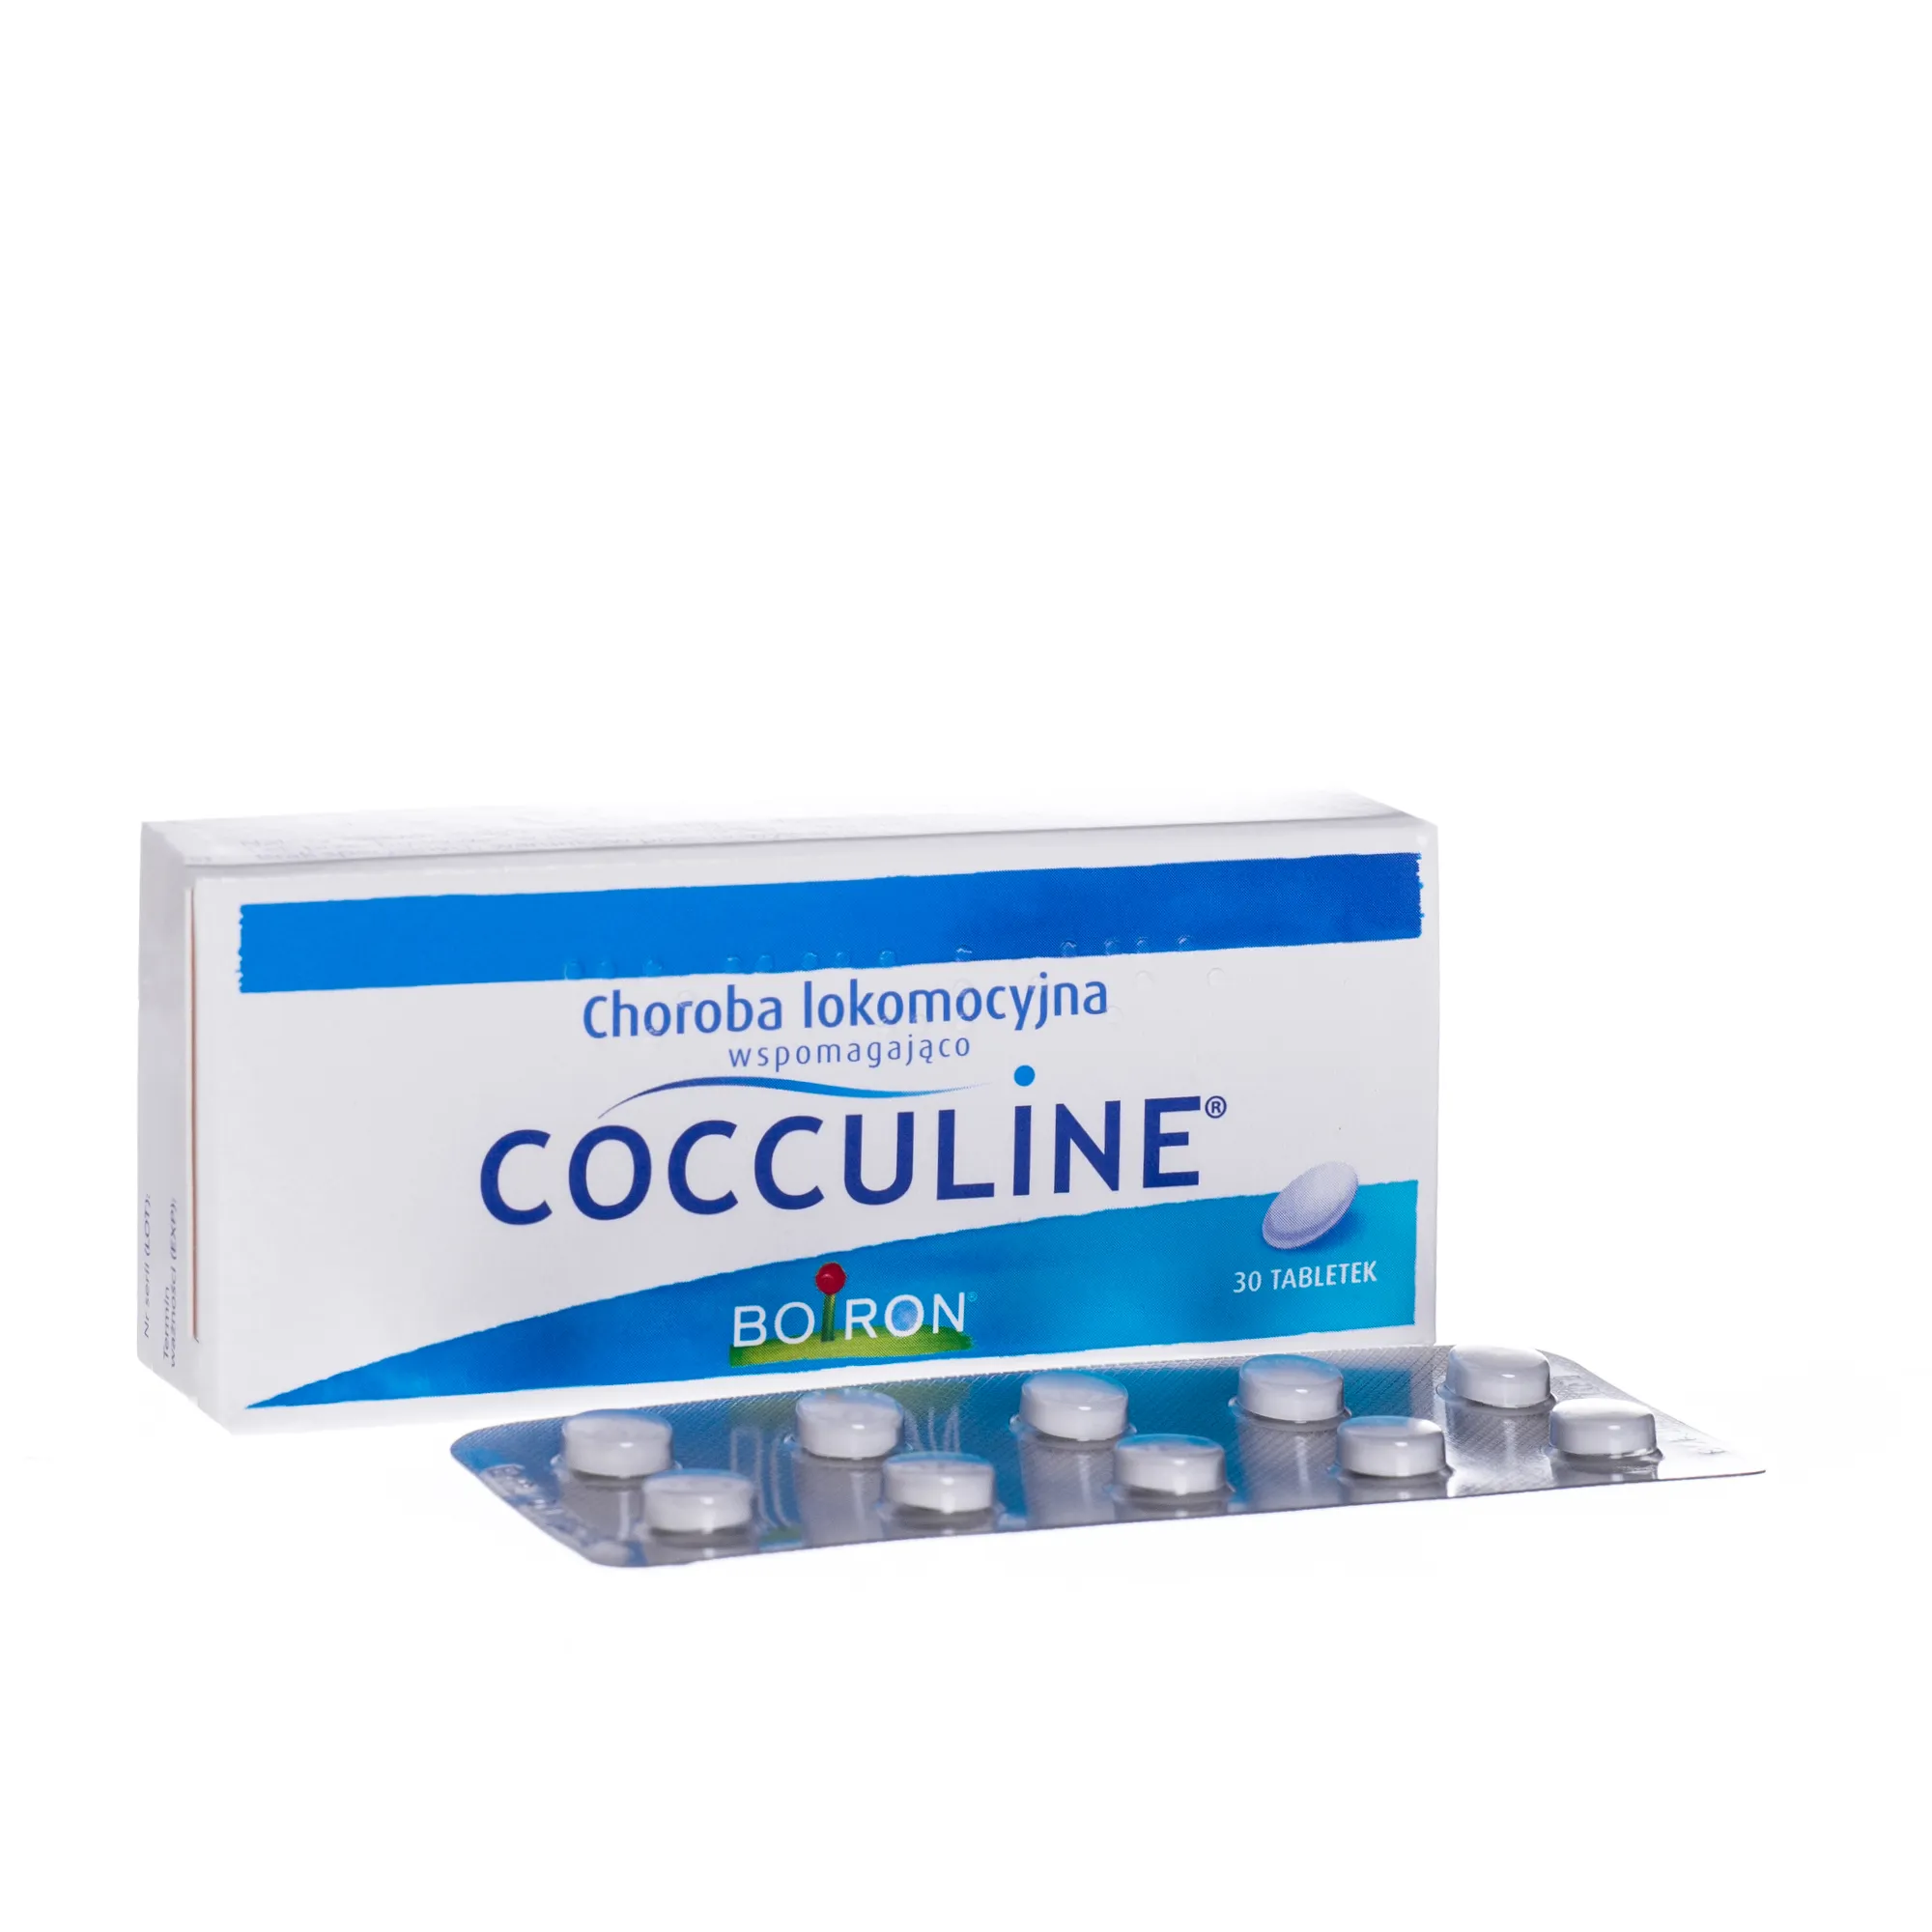 Cocculine, lek przeciw chorobie lokomocyjnej, 30 tabletek